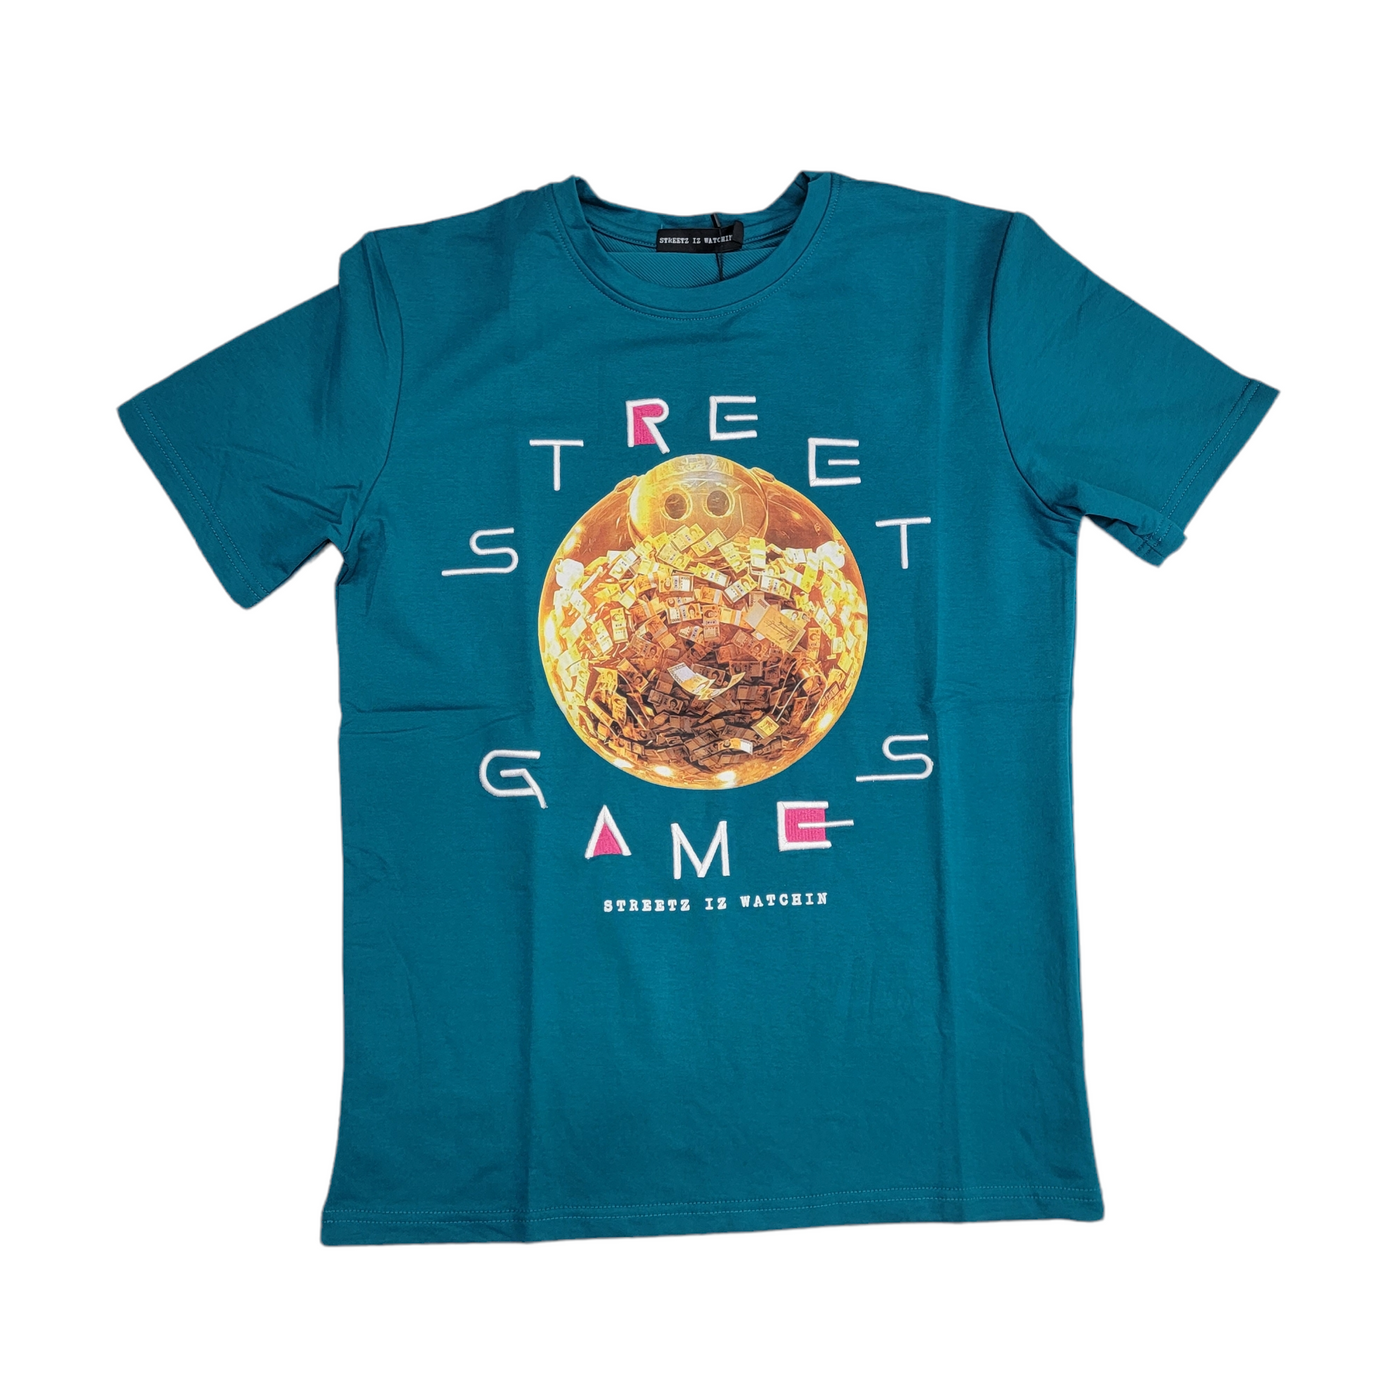 Streetz Iz Watchin Street Games T-Shirt Green